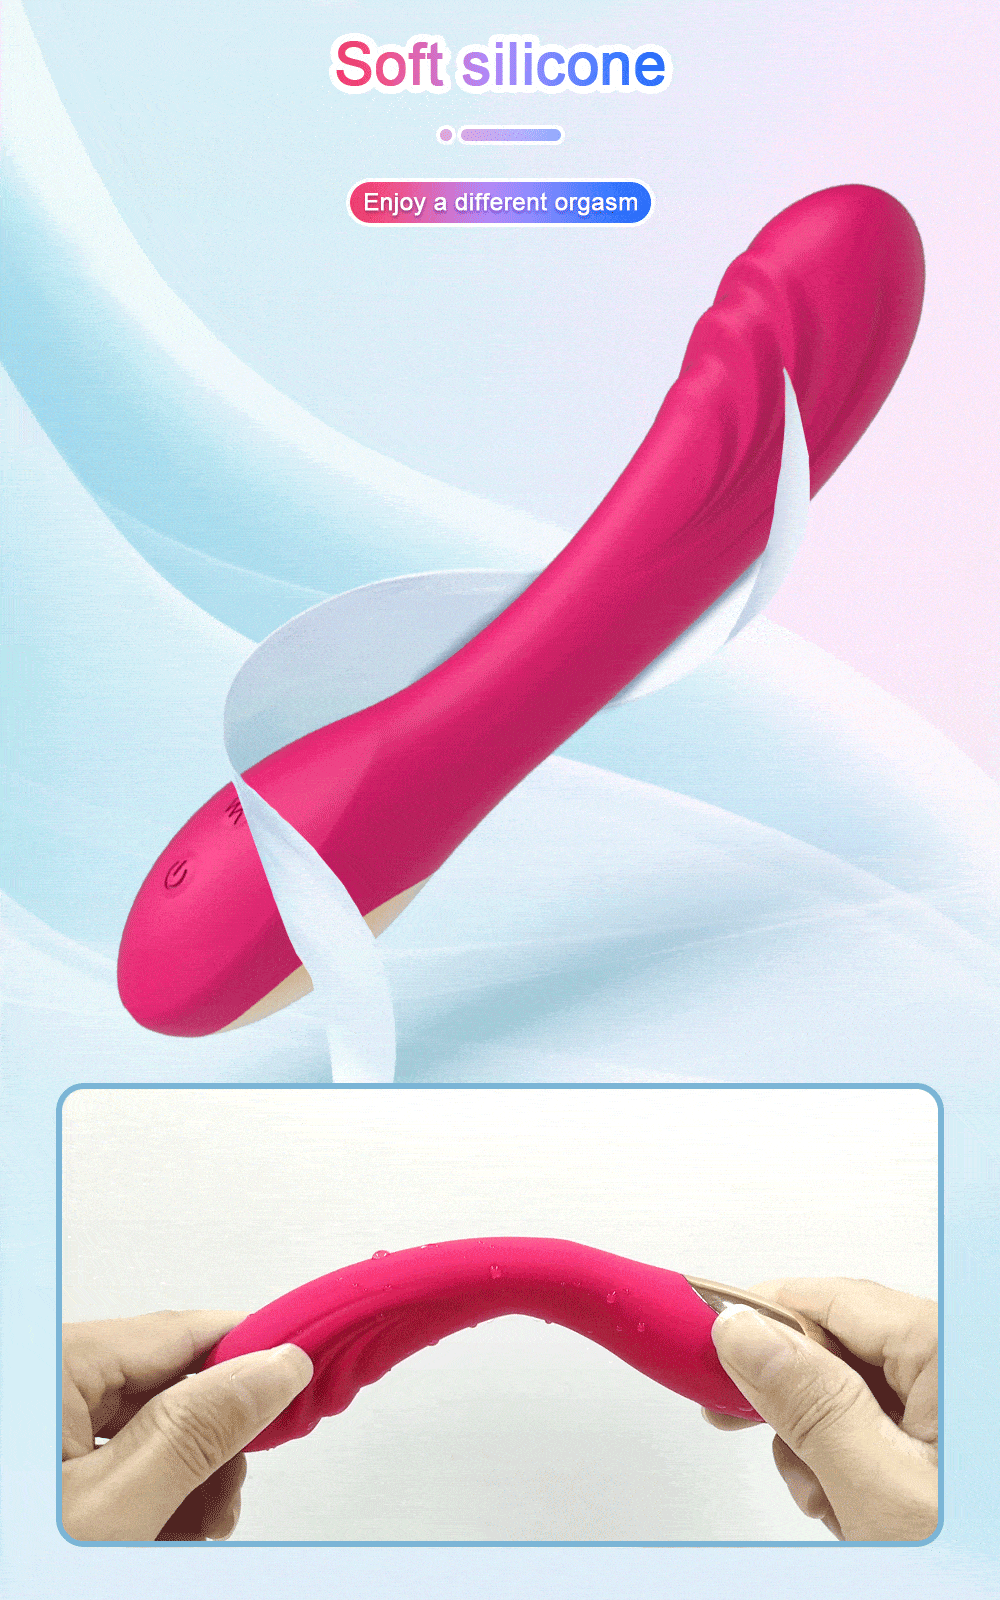 G-Spot Dildo Vibrator Female Vibrating Masturbation Rechargeable Sex photo pic